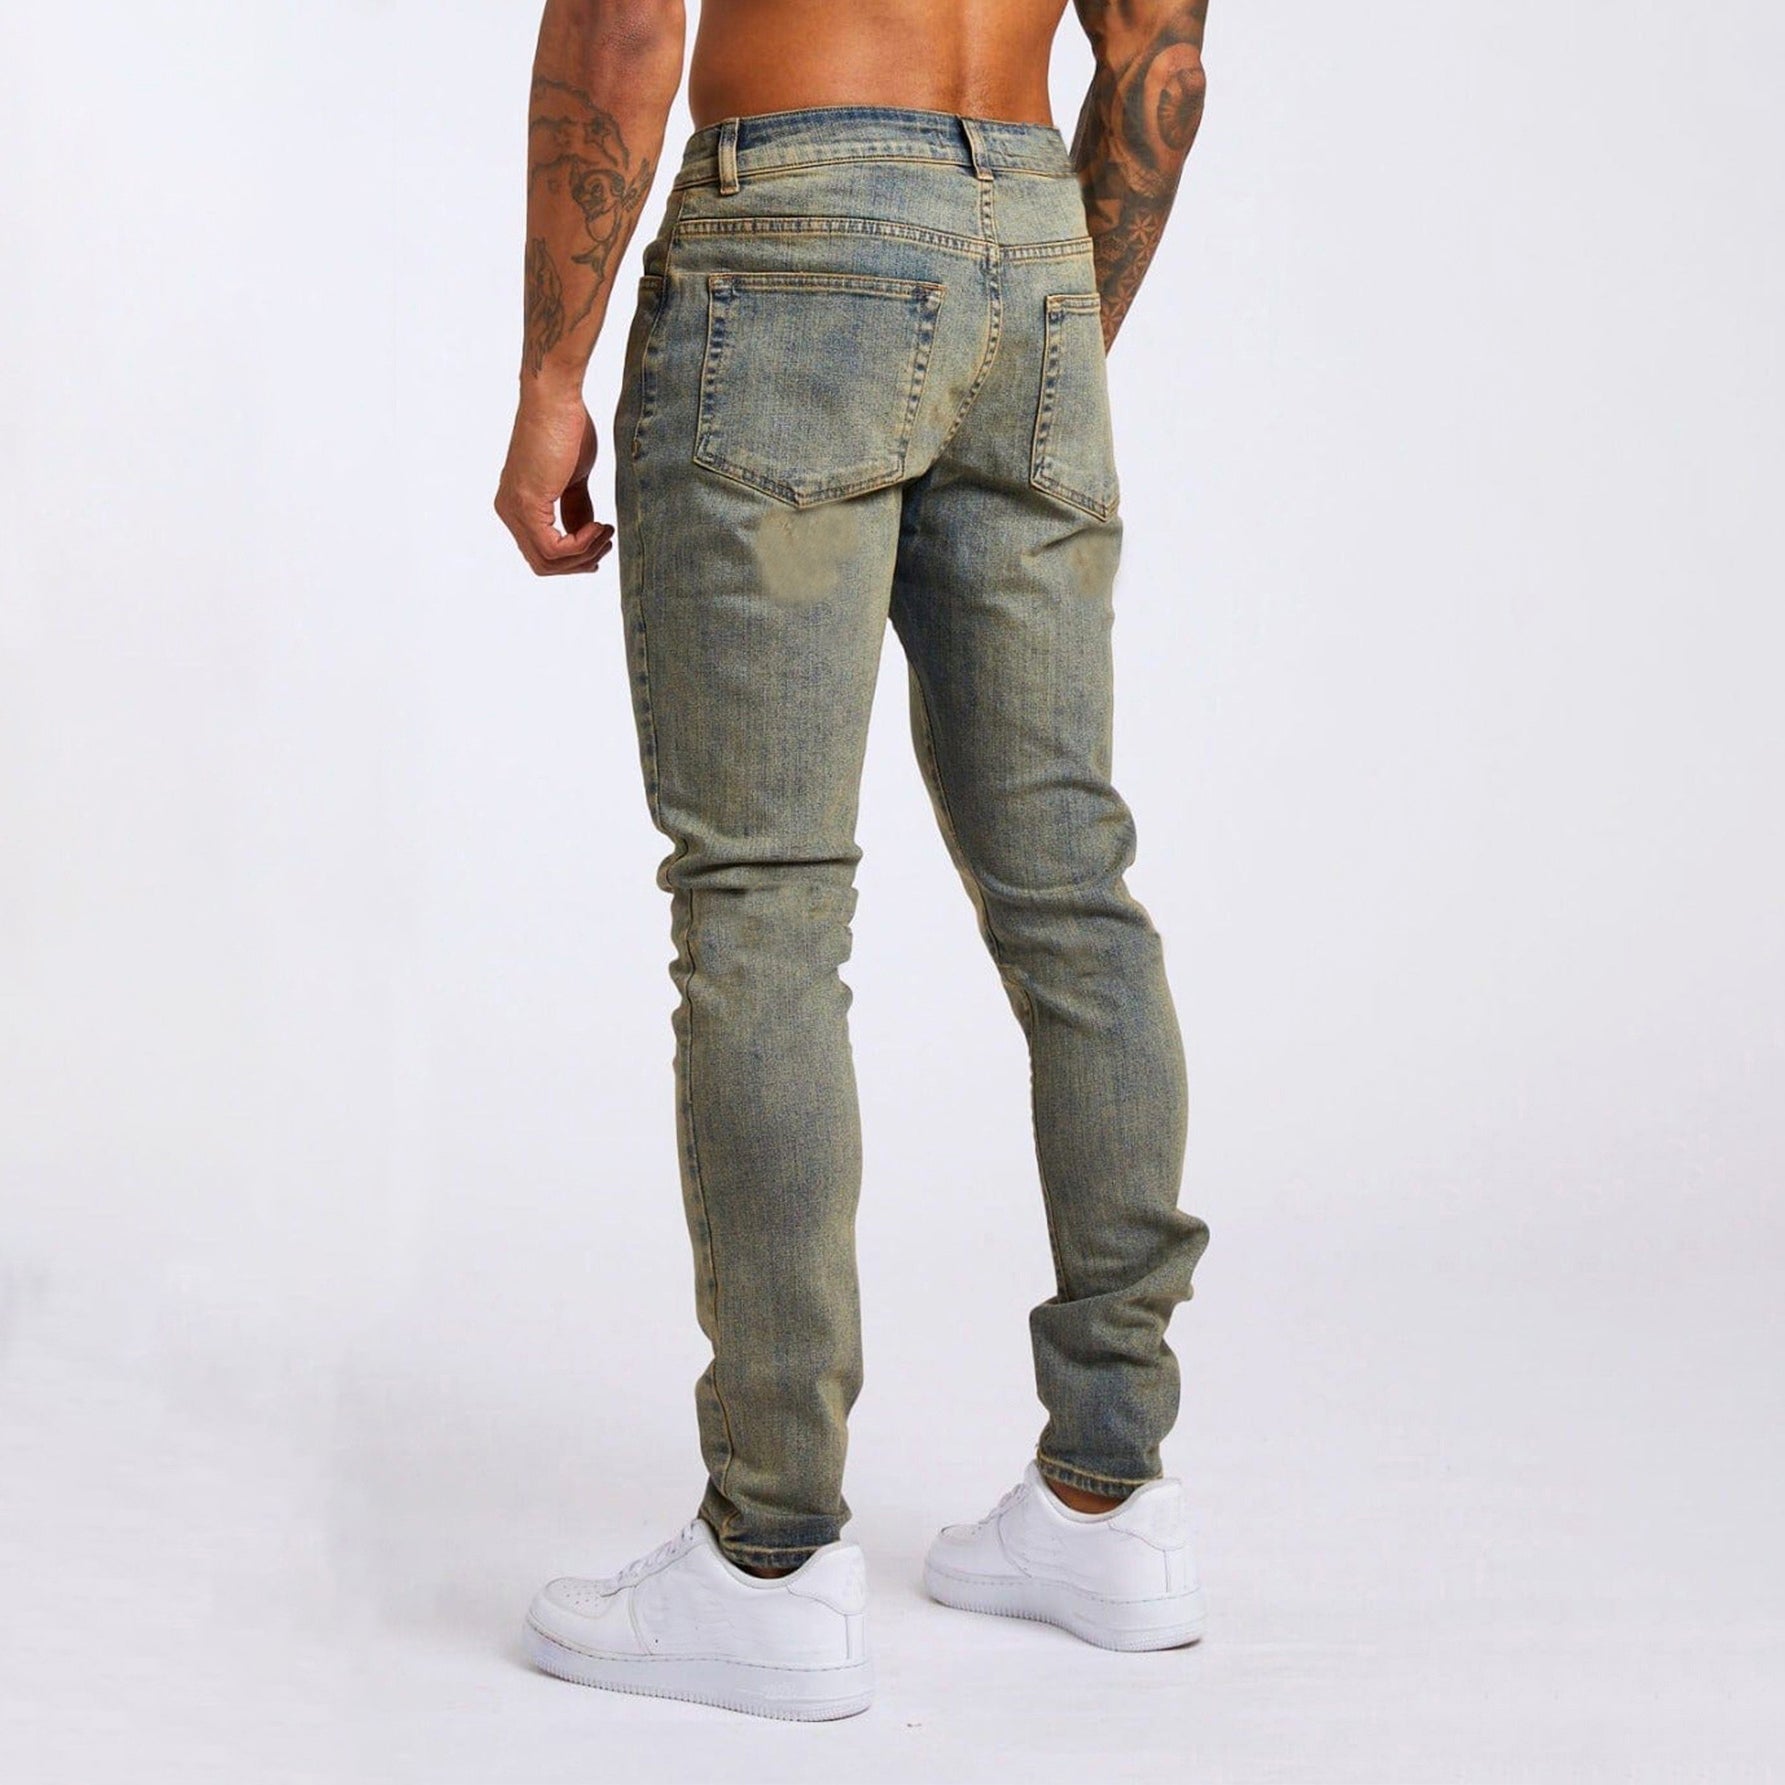 Jack Washington Determined Style Jeans